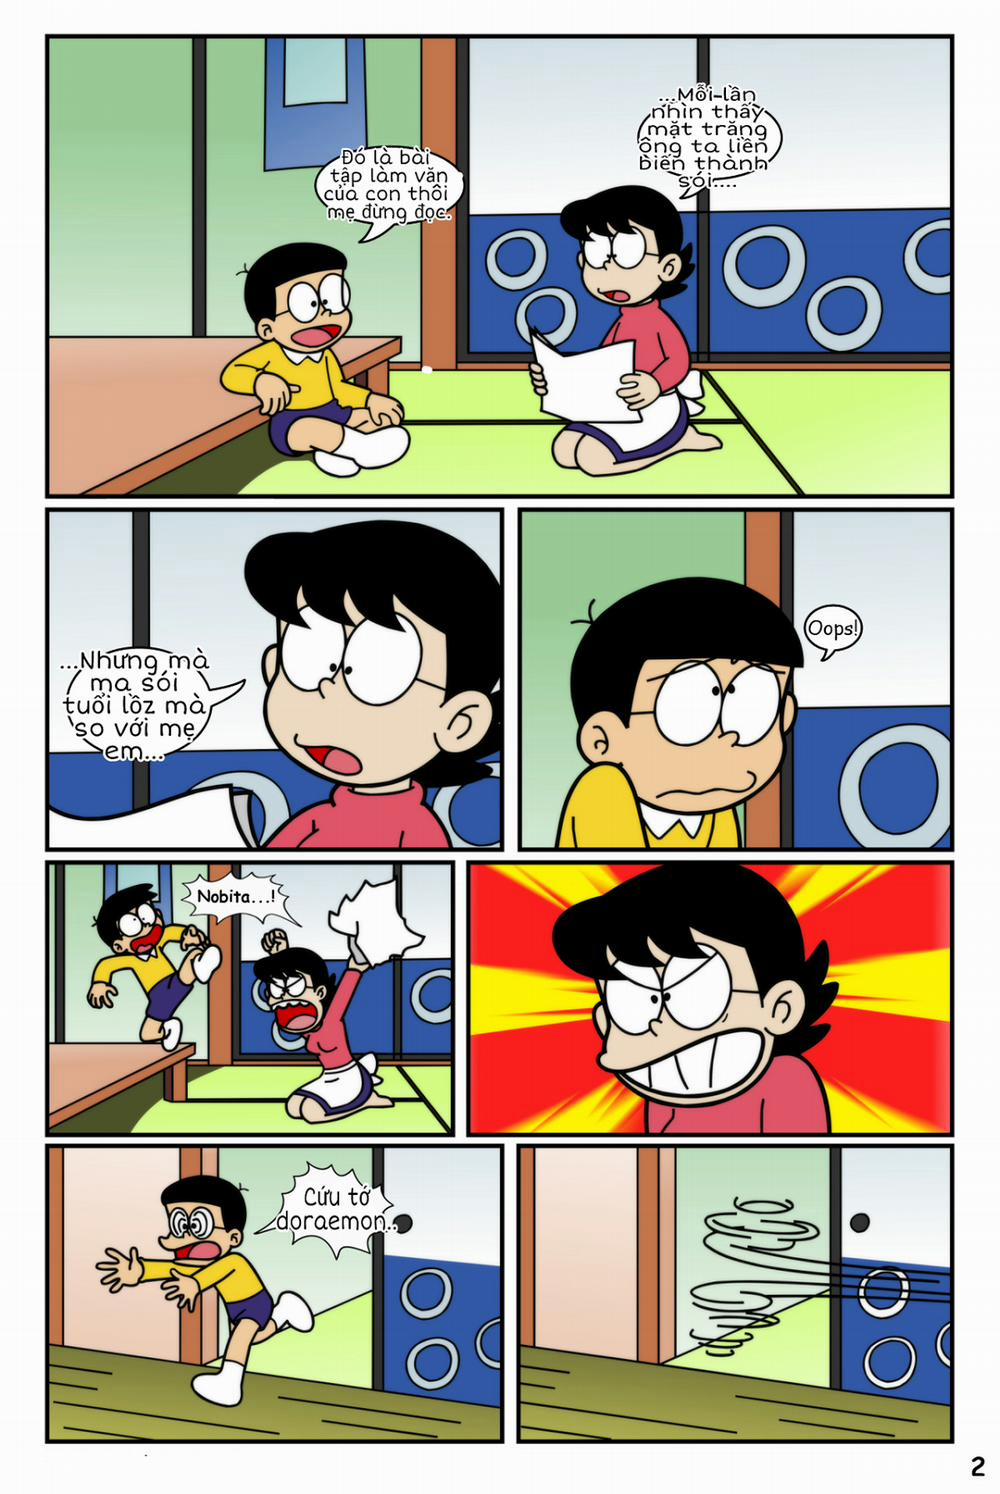 Tuyển Tập Doraemon Doujinshi 18+ Chương 19 Kem ch s i 1 Trang 4